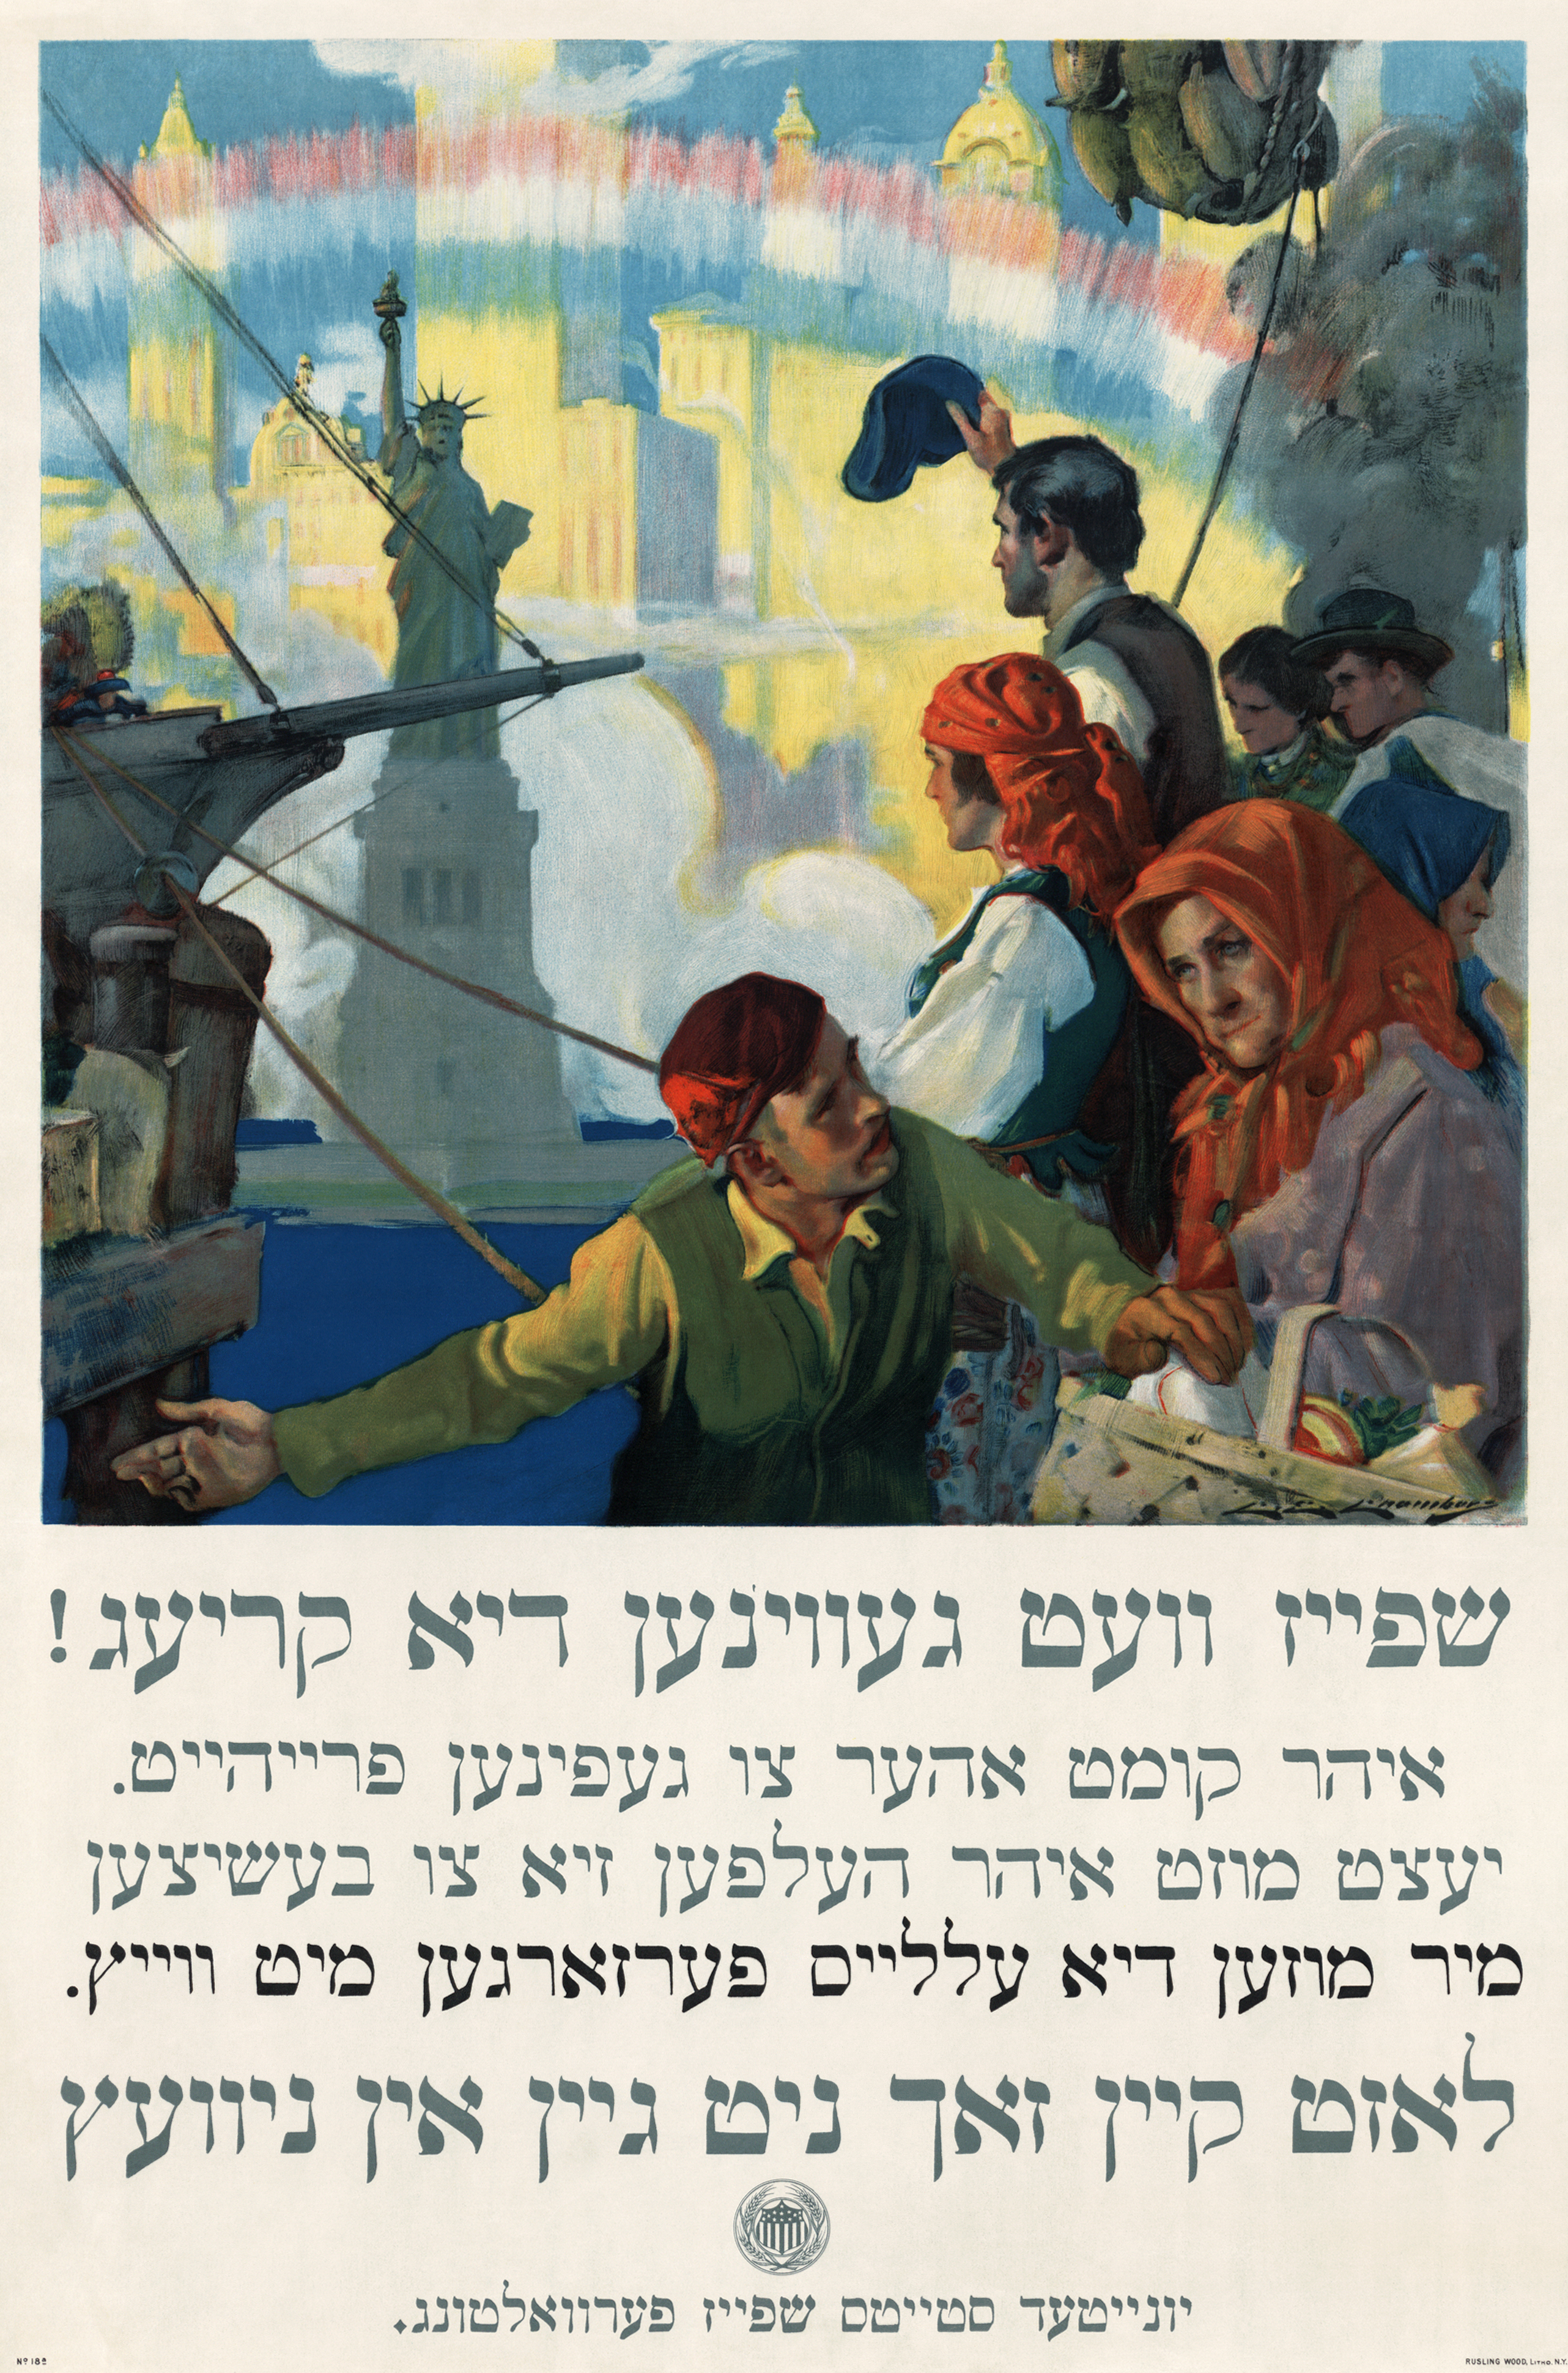 Affisch på yiddisch från första världskrigets USA. 80 år senare - efter att förföljelserna av språkets talare blivit fruktansvärda, vidriga och dödliga bortom beskrivning - erkändes språket officiellt av Sverige.